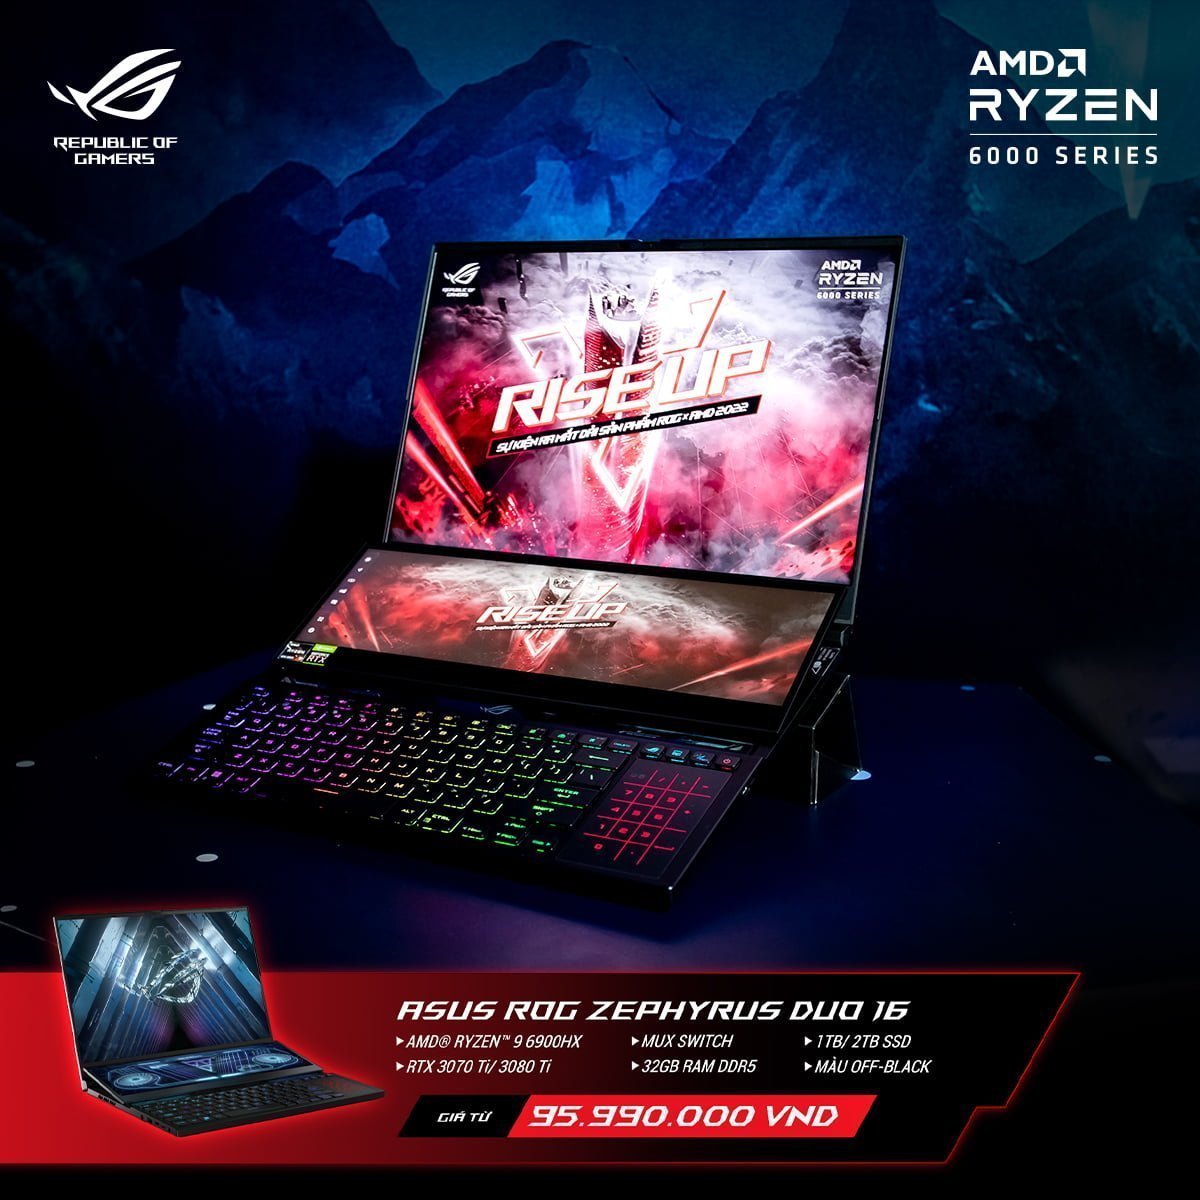 [PR] ASUS ROG công bố loạt sản phẩm laptop mới nền tảng AMD Ryzen 6000 Series tại thị trường Việt Nam - Image 6